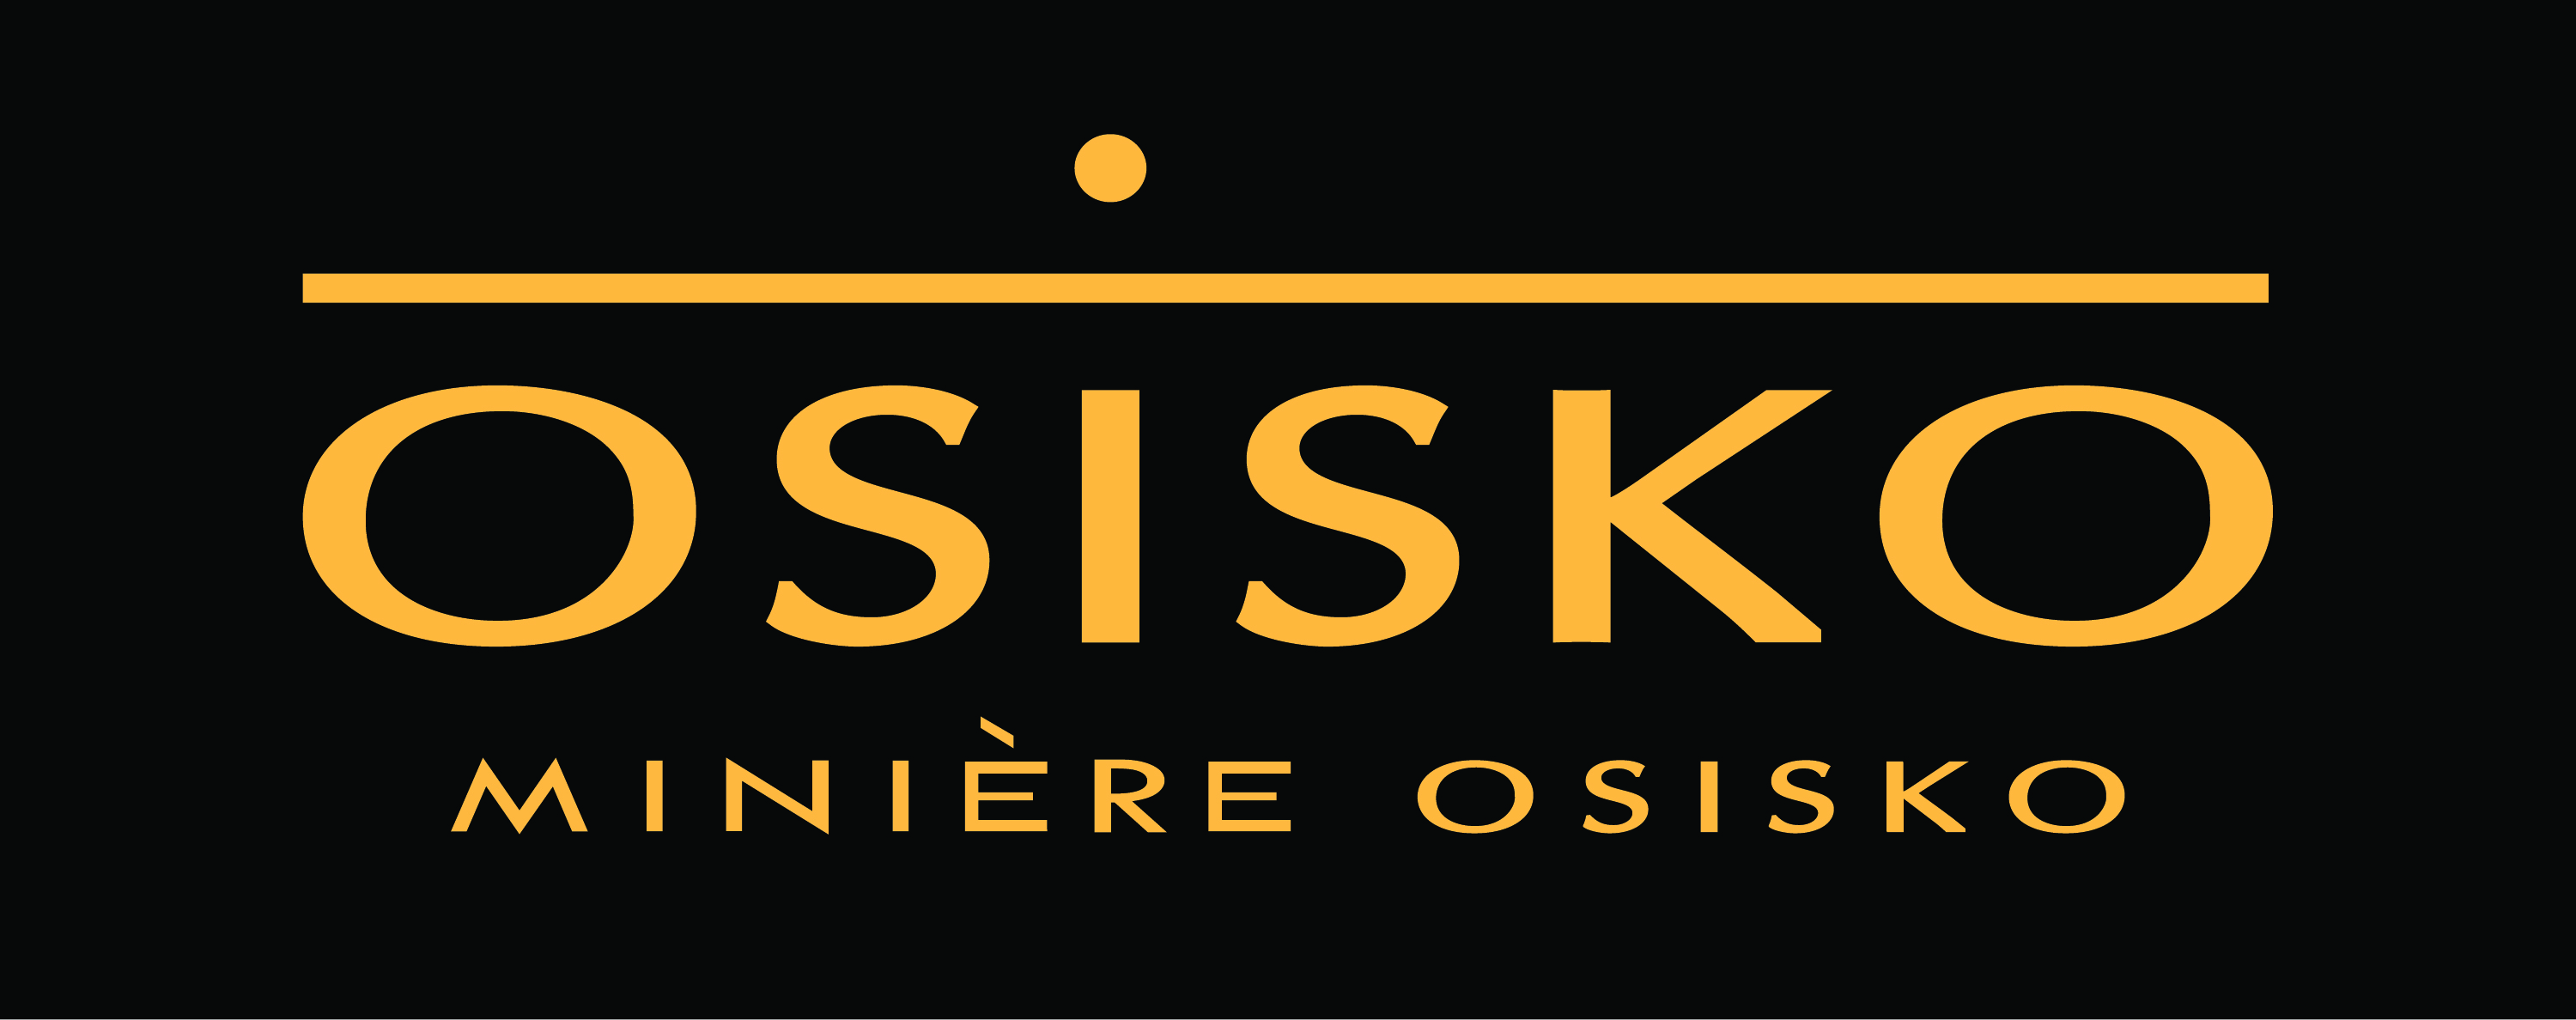 Osisko Mining Inc.